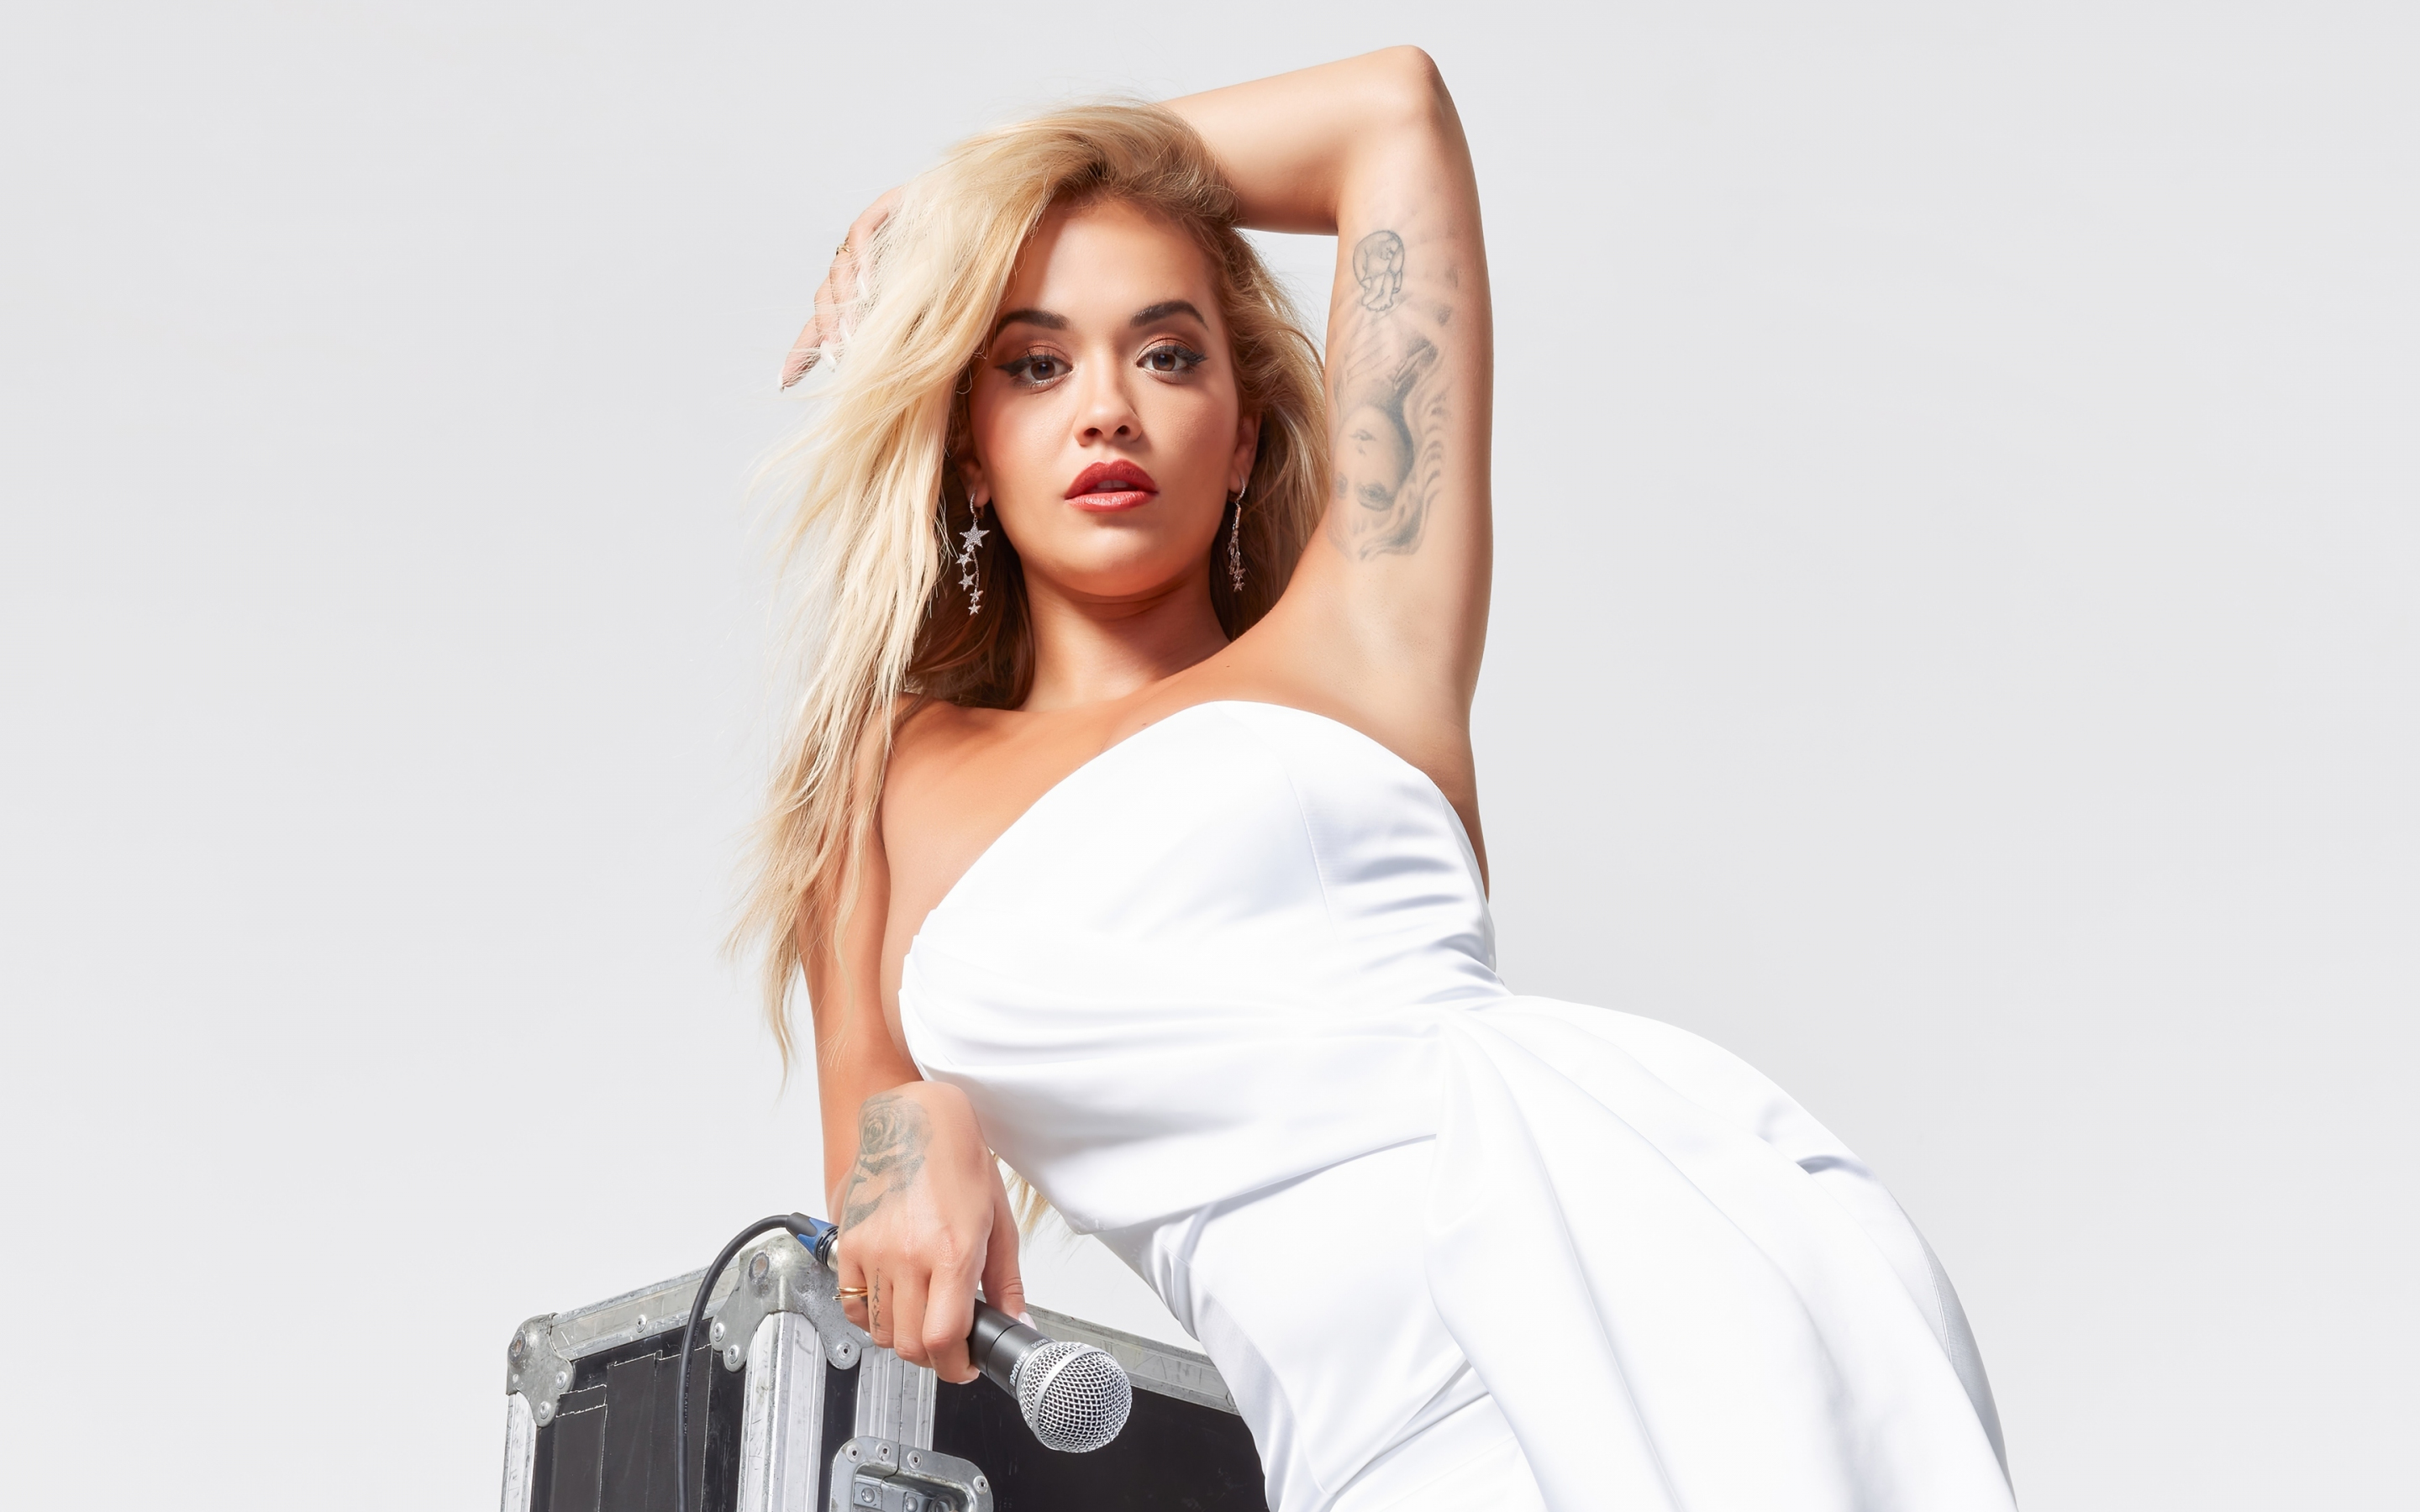 Pretty singer, Rita Ora, white dress, 2880x1800 wallpaper